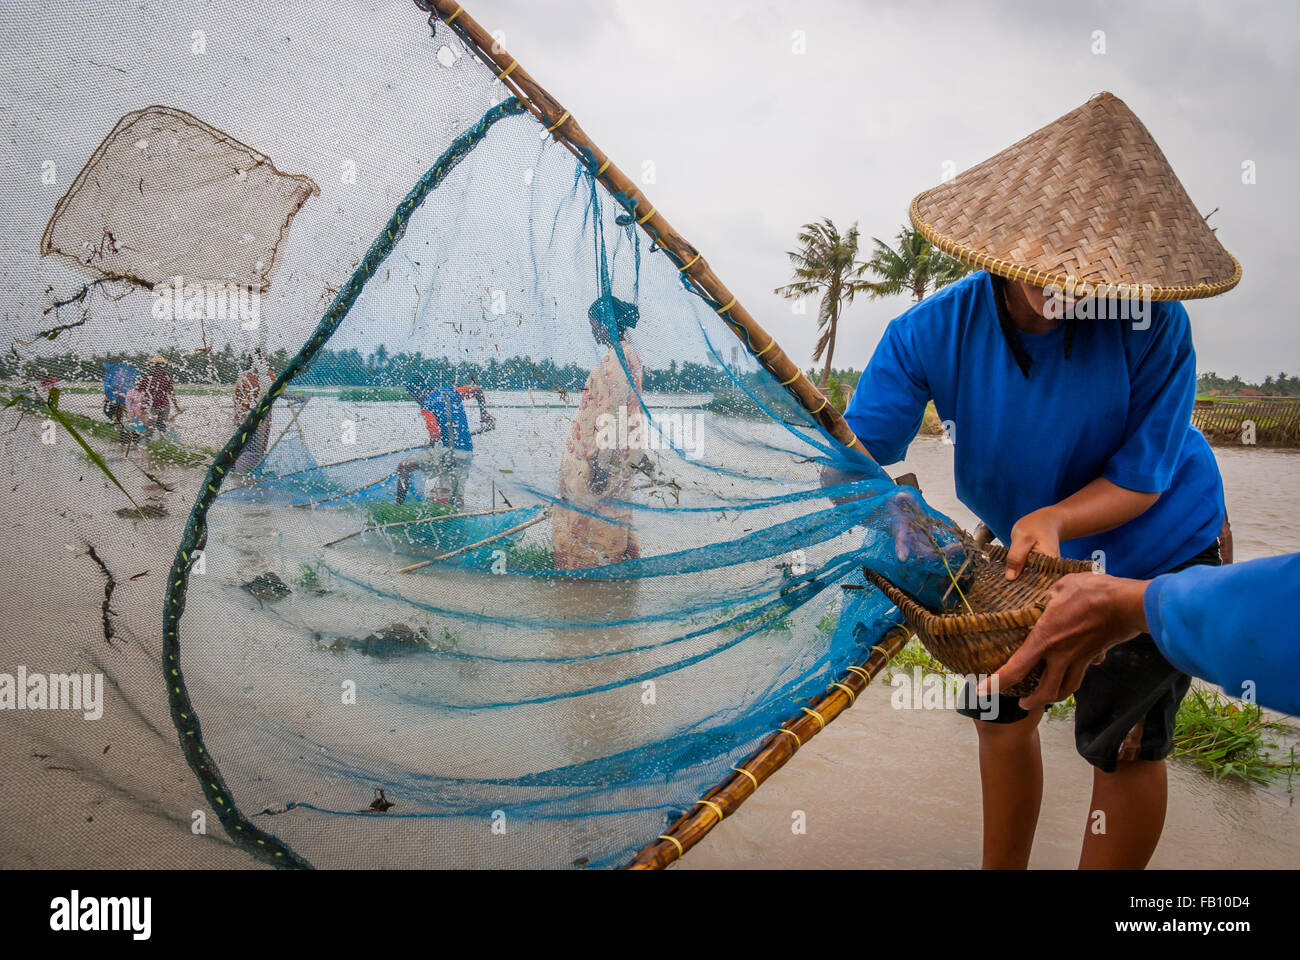 Coltivatori che catturano i pesci sulle acque alluvionali. Foto Stock